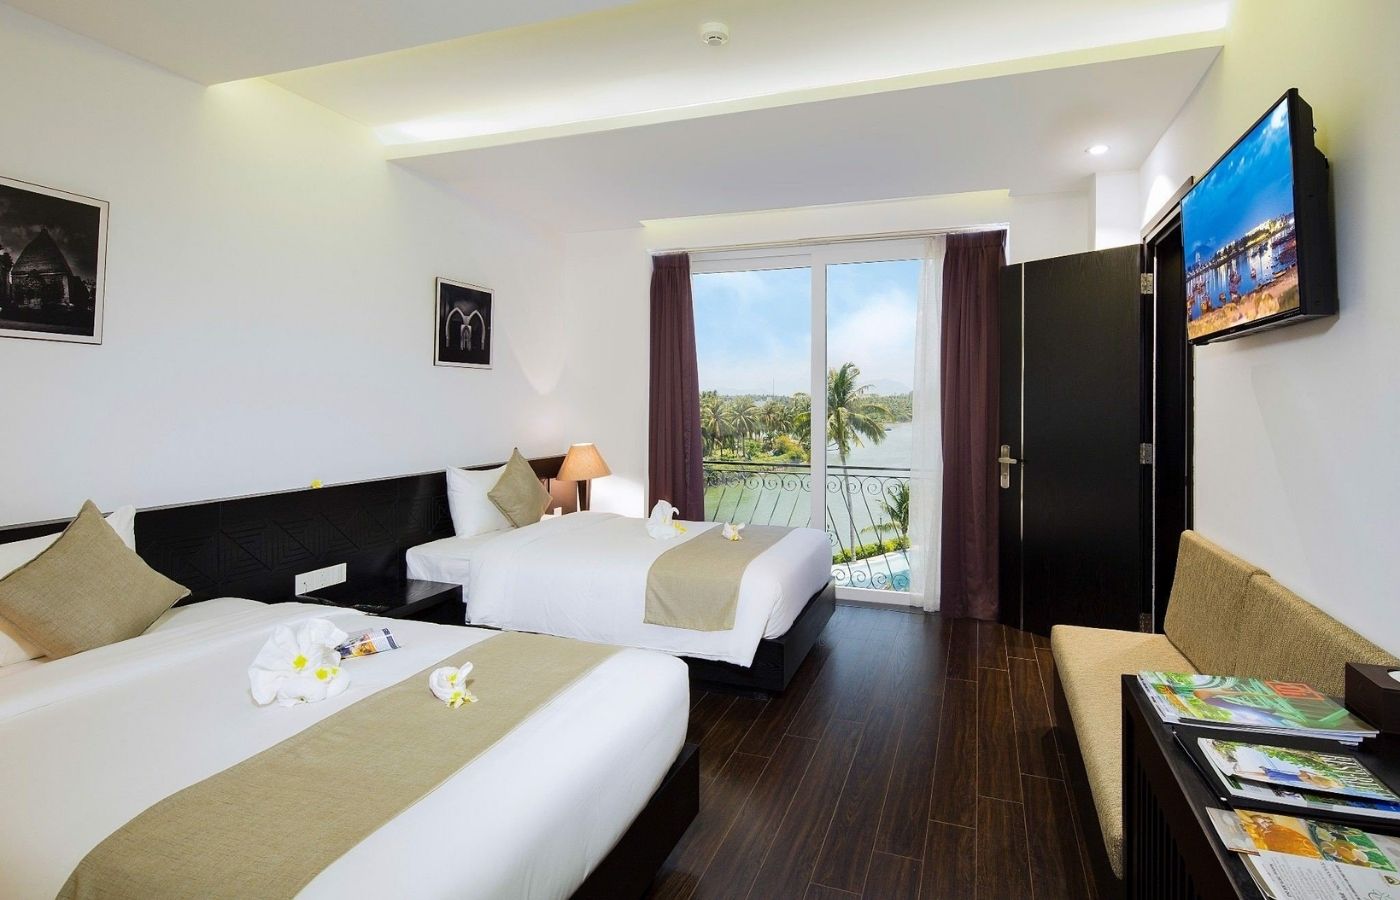 Champa Island Nha Trang - Resort Hotel & Spa- ốc đảo xanh giữa lòng thành phố biển 4